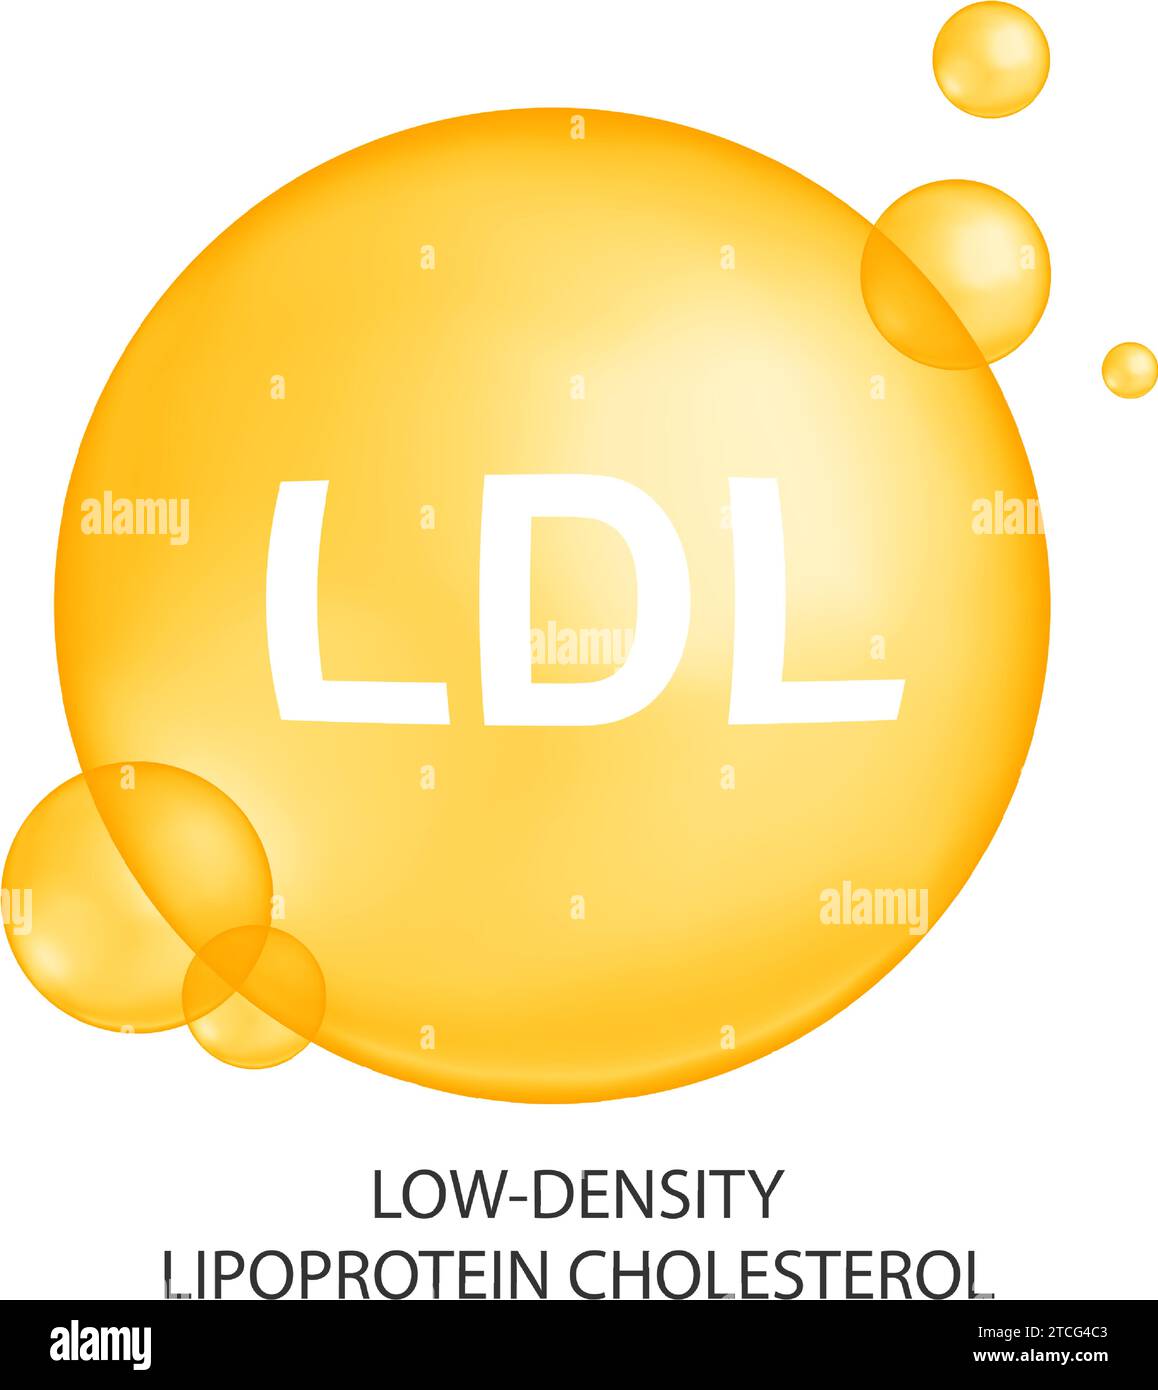 Cholesterin-LDL-Typ. Schlechtes Cholesterin-Konzept. Lipoprotein-Symbol mit niedriger Dichte auf weißem Hintergrund. Medizinische Infografik. Vektorabbildung. Stock Vektor